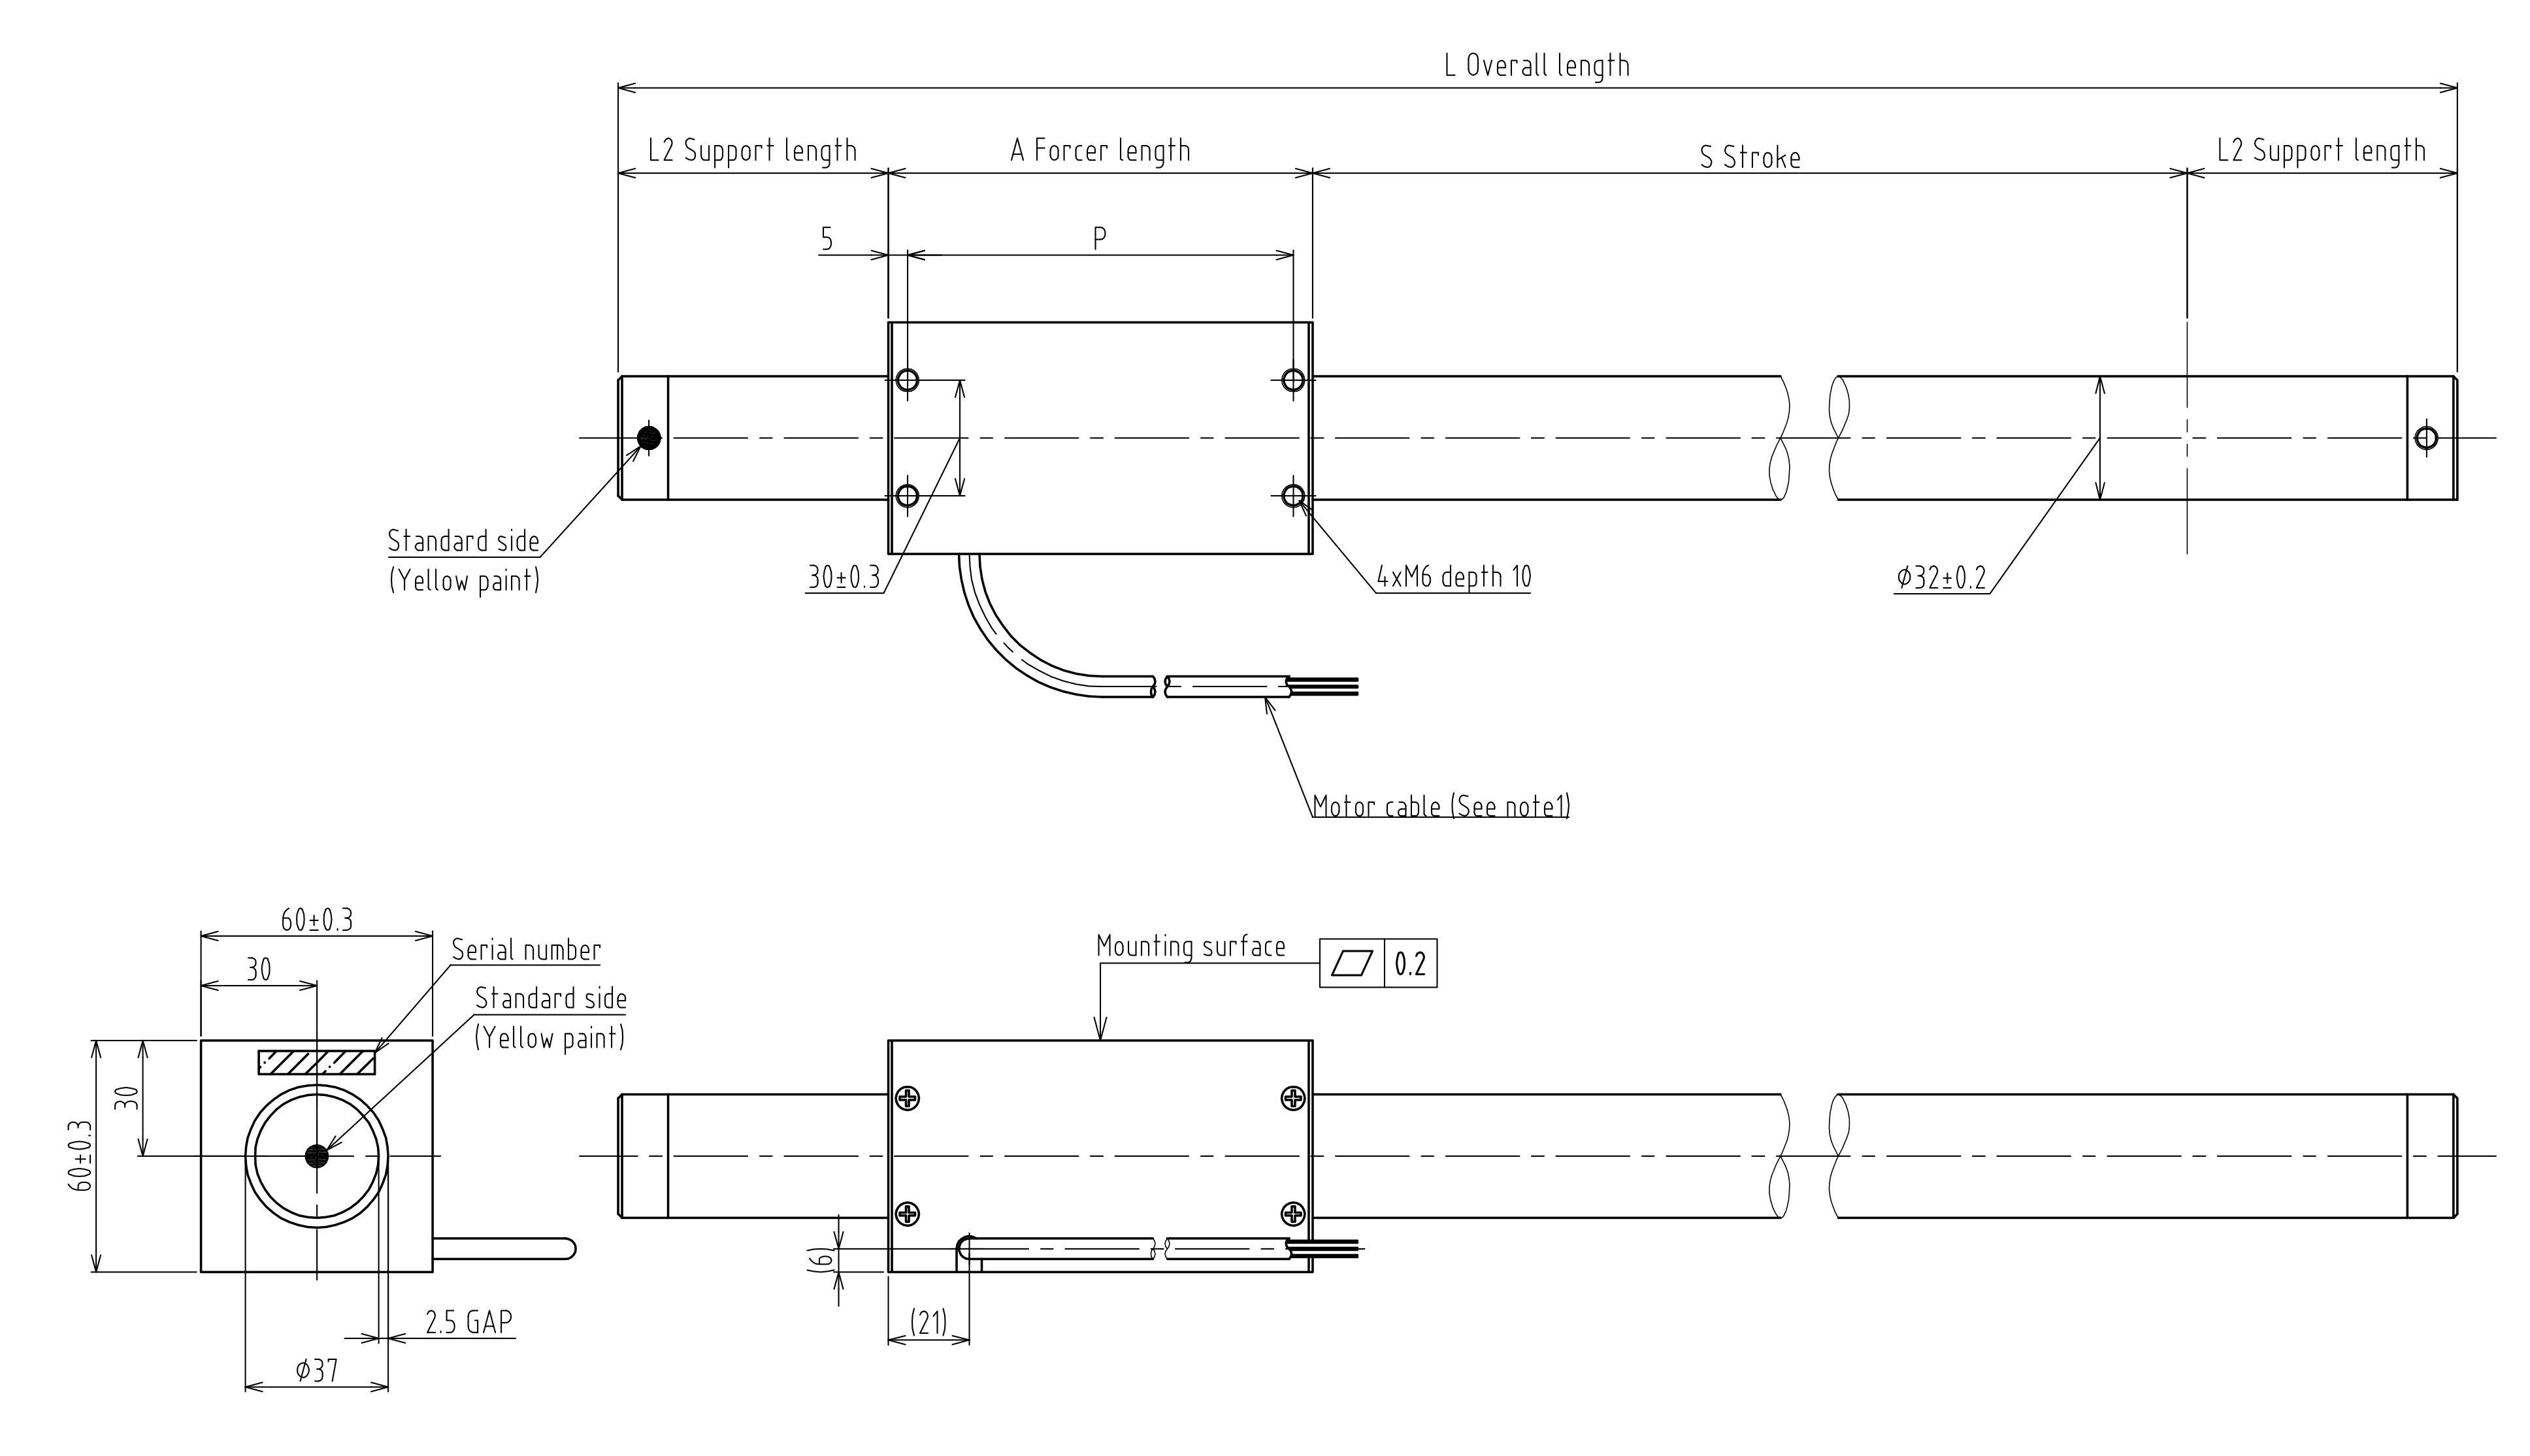 L320TS system drawing